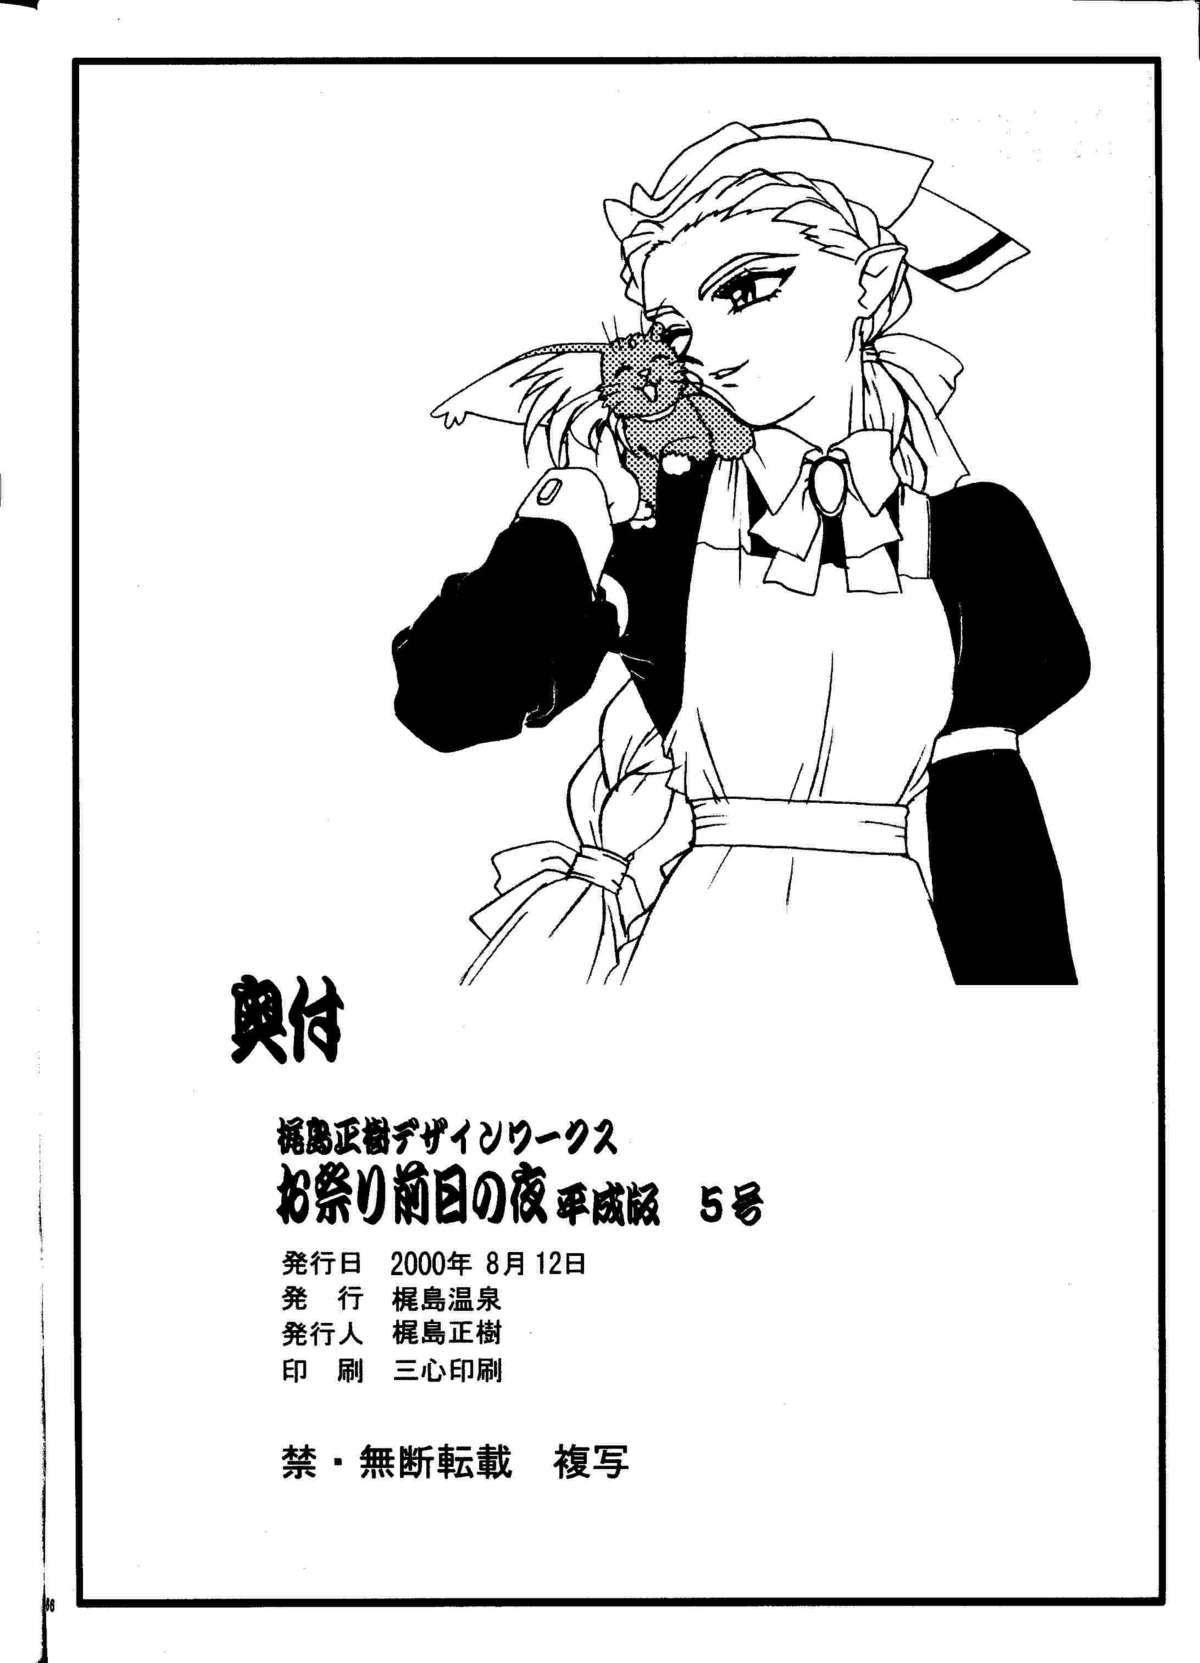 Brother Omatsuri Zenjitsu no Yoru Heisei Ban 5 - Tenchi muyo gxp Gosenzo san-e Verification - Page 65